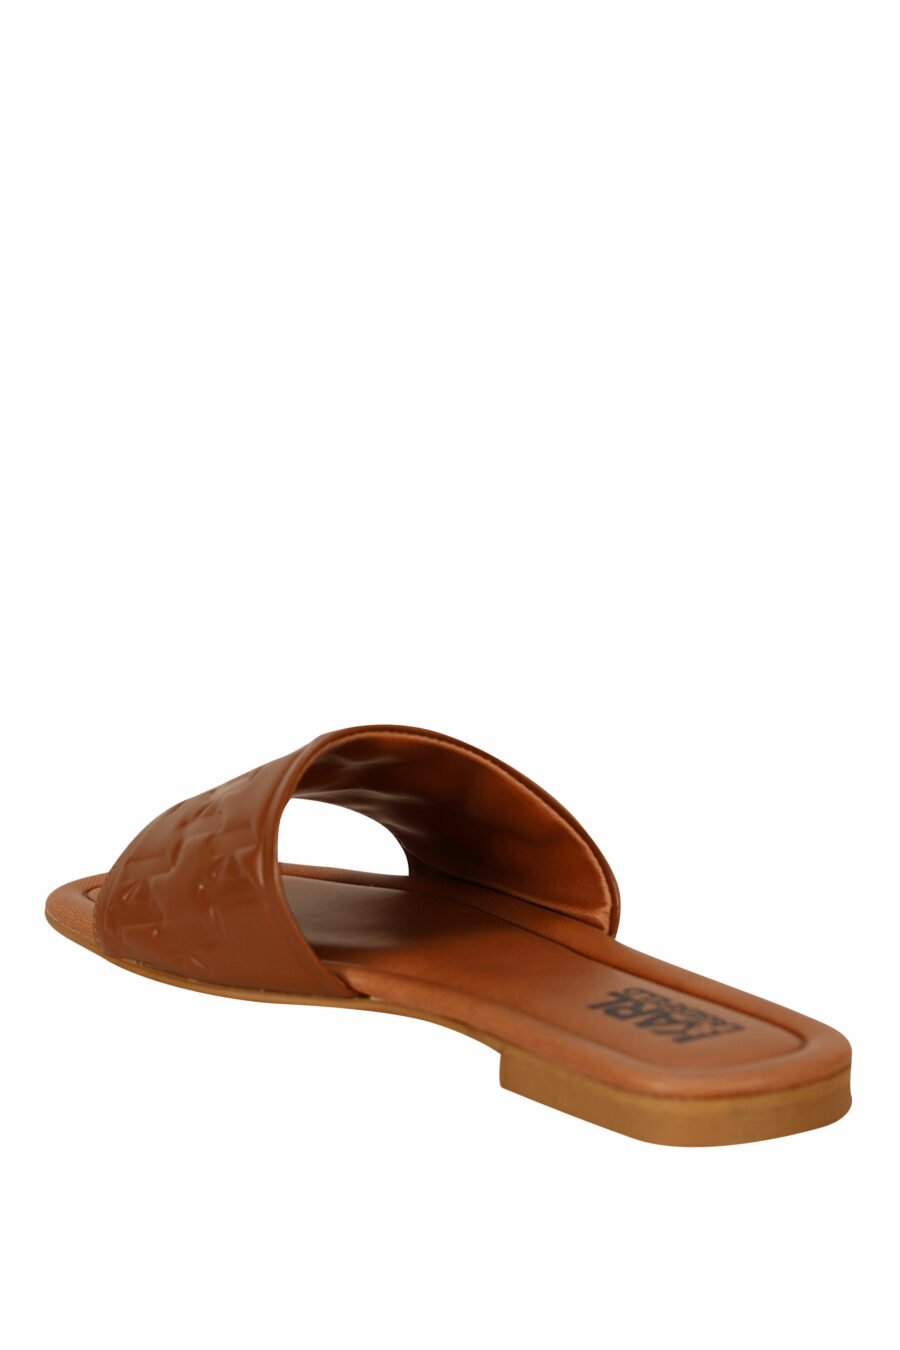 Sandalias marrón de cuero con logo monogram - 5059529404191 3